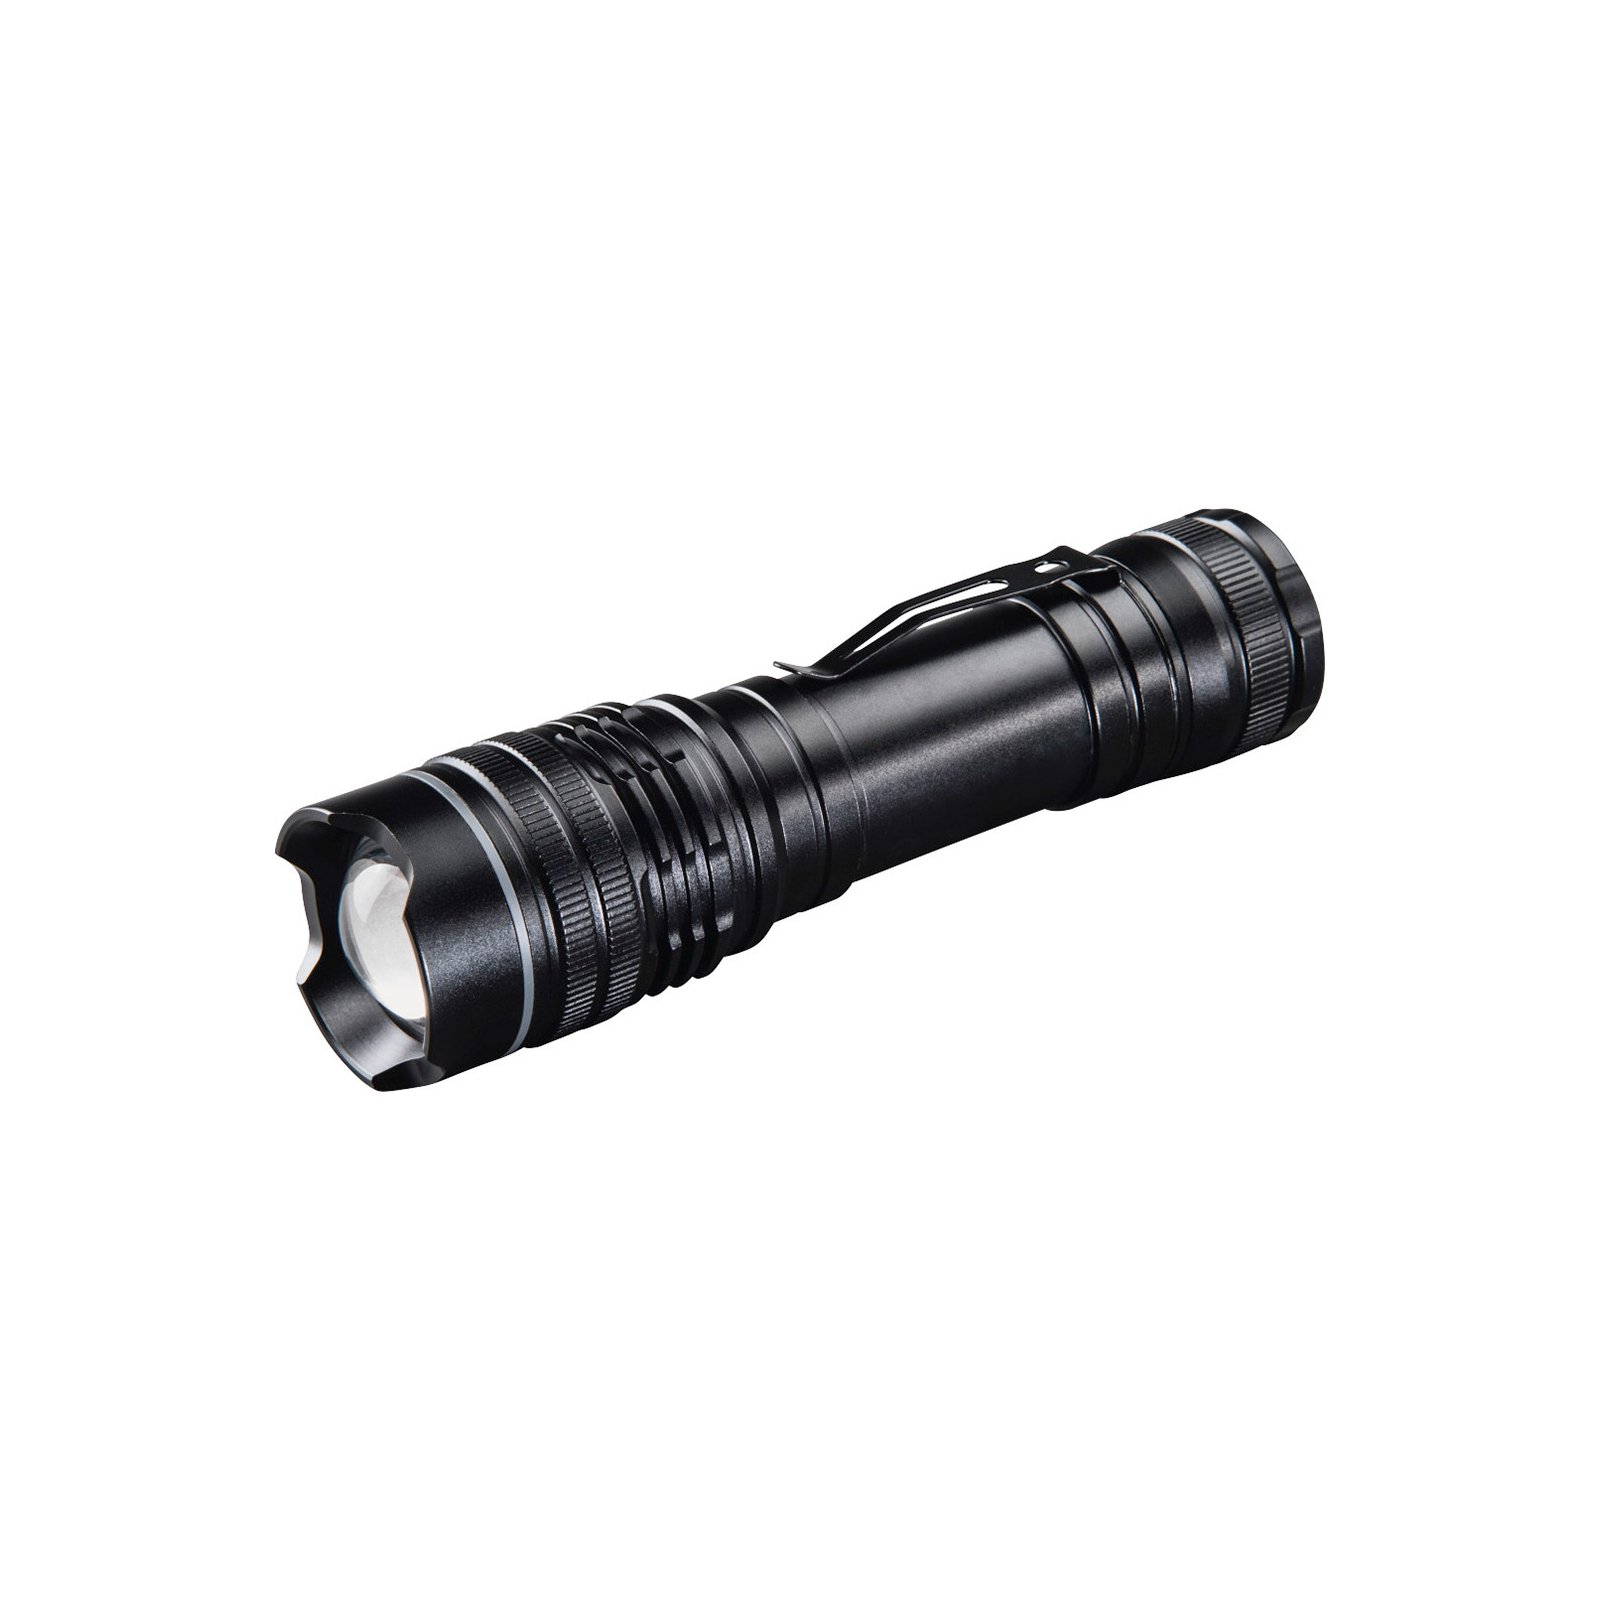 Фонарь Hama Professional 4 LED Torch L370 Black (00136673)